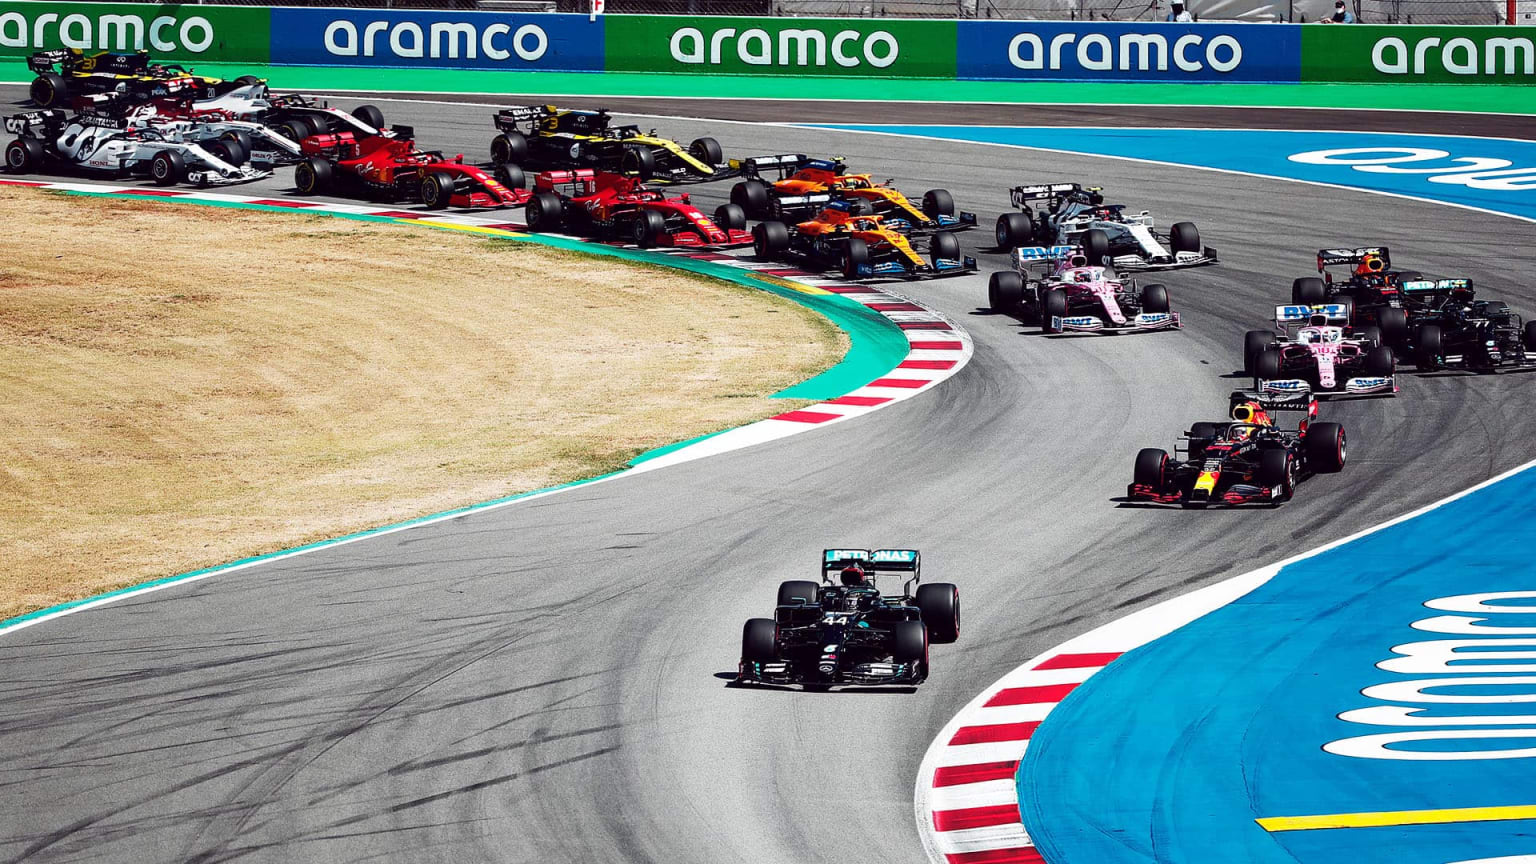 Spanish Grand Prix 2021 F1 Race